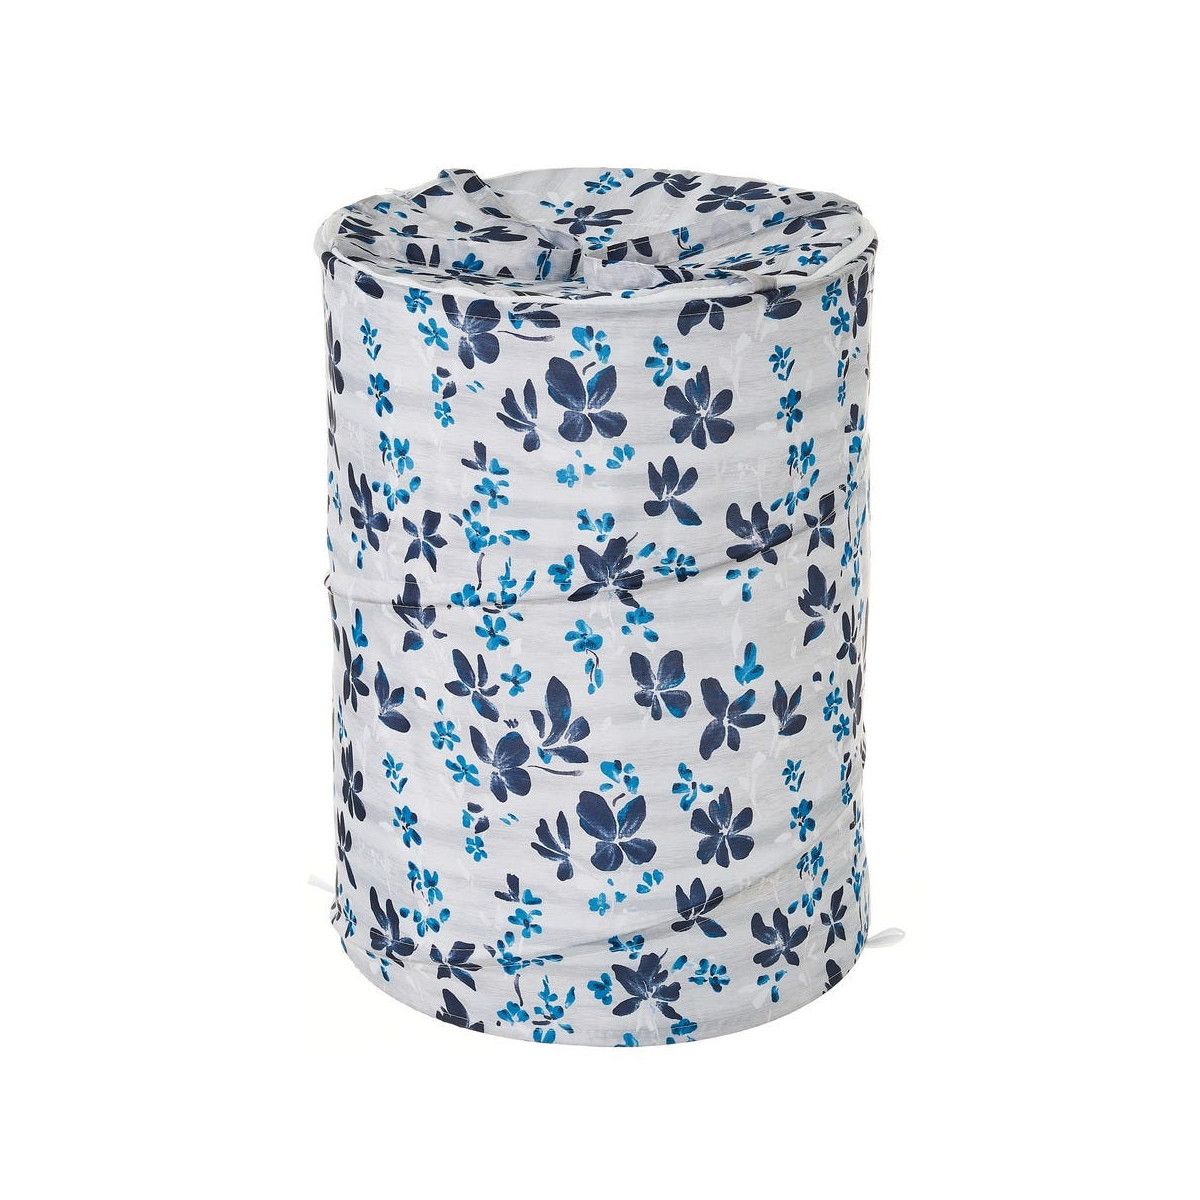 Panier à linge en polyester blanc et bleu floral - 40x40x55cm